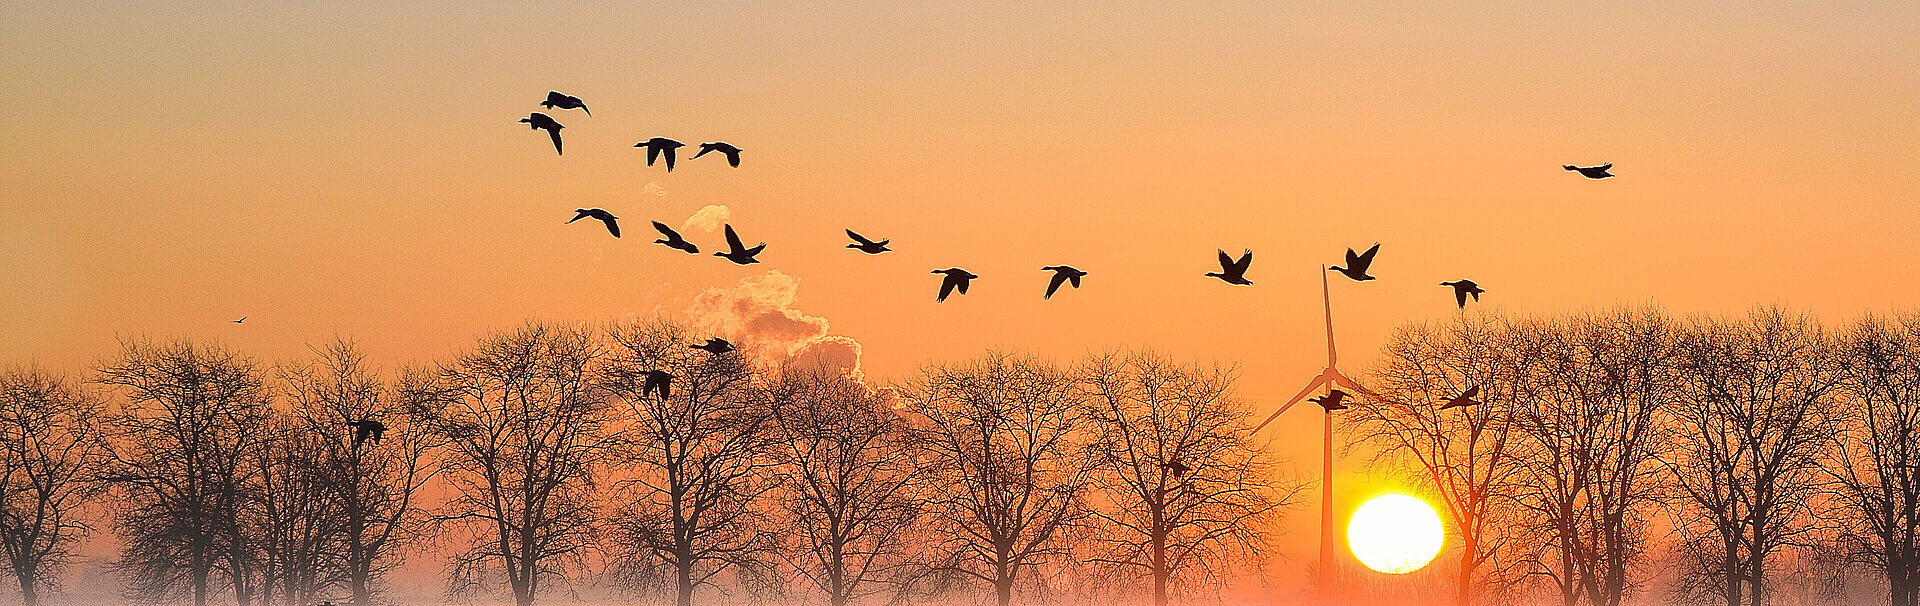 Vögel und Bäume im Sonnenuntergang